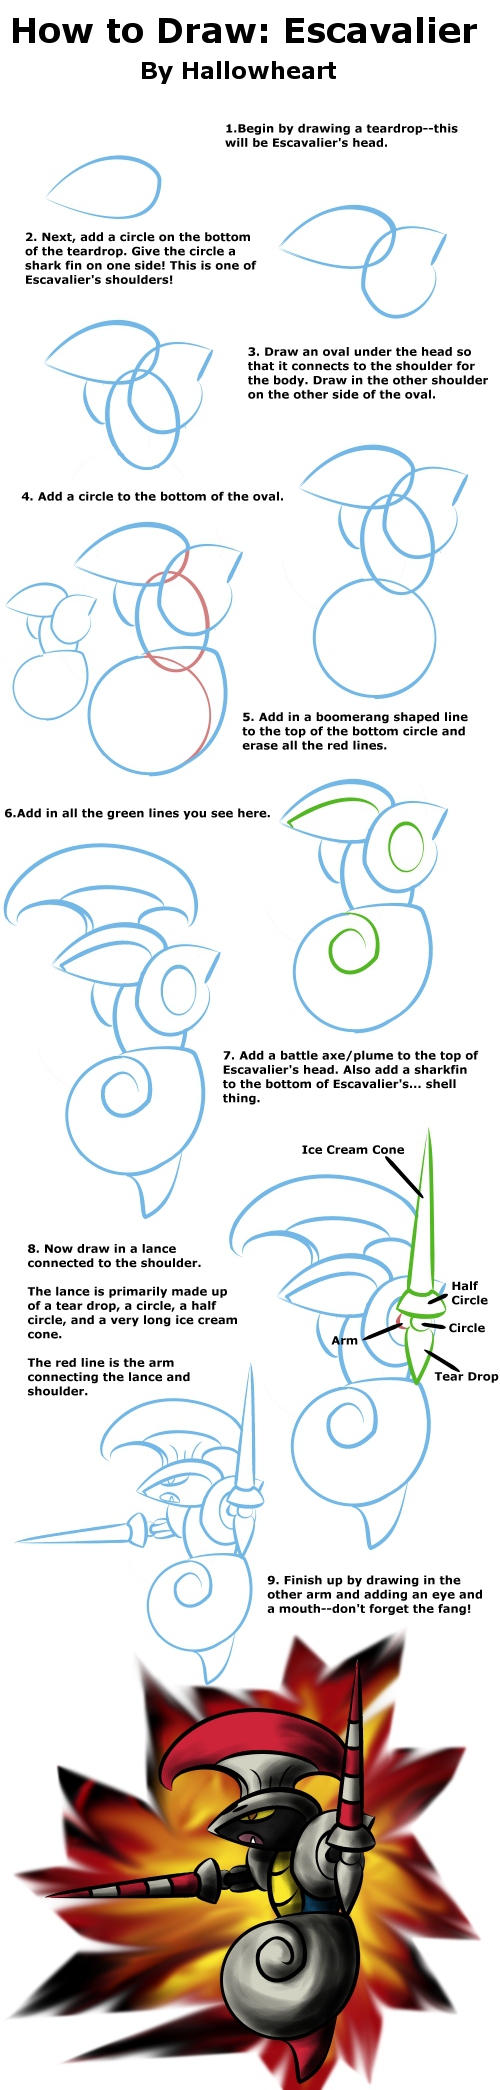 How to Draw: Escavalier by ryuuryuu